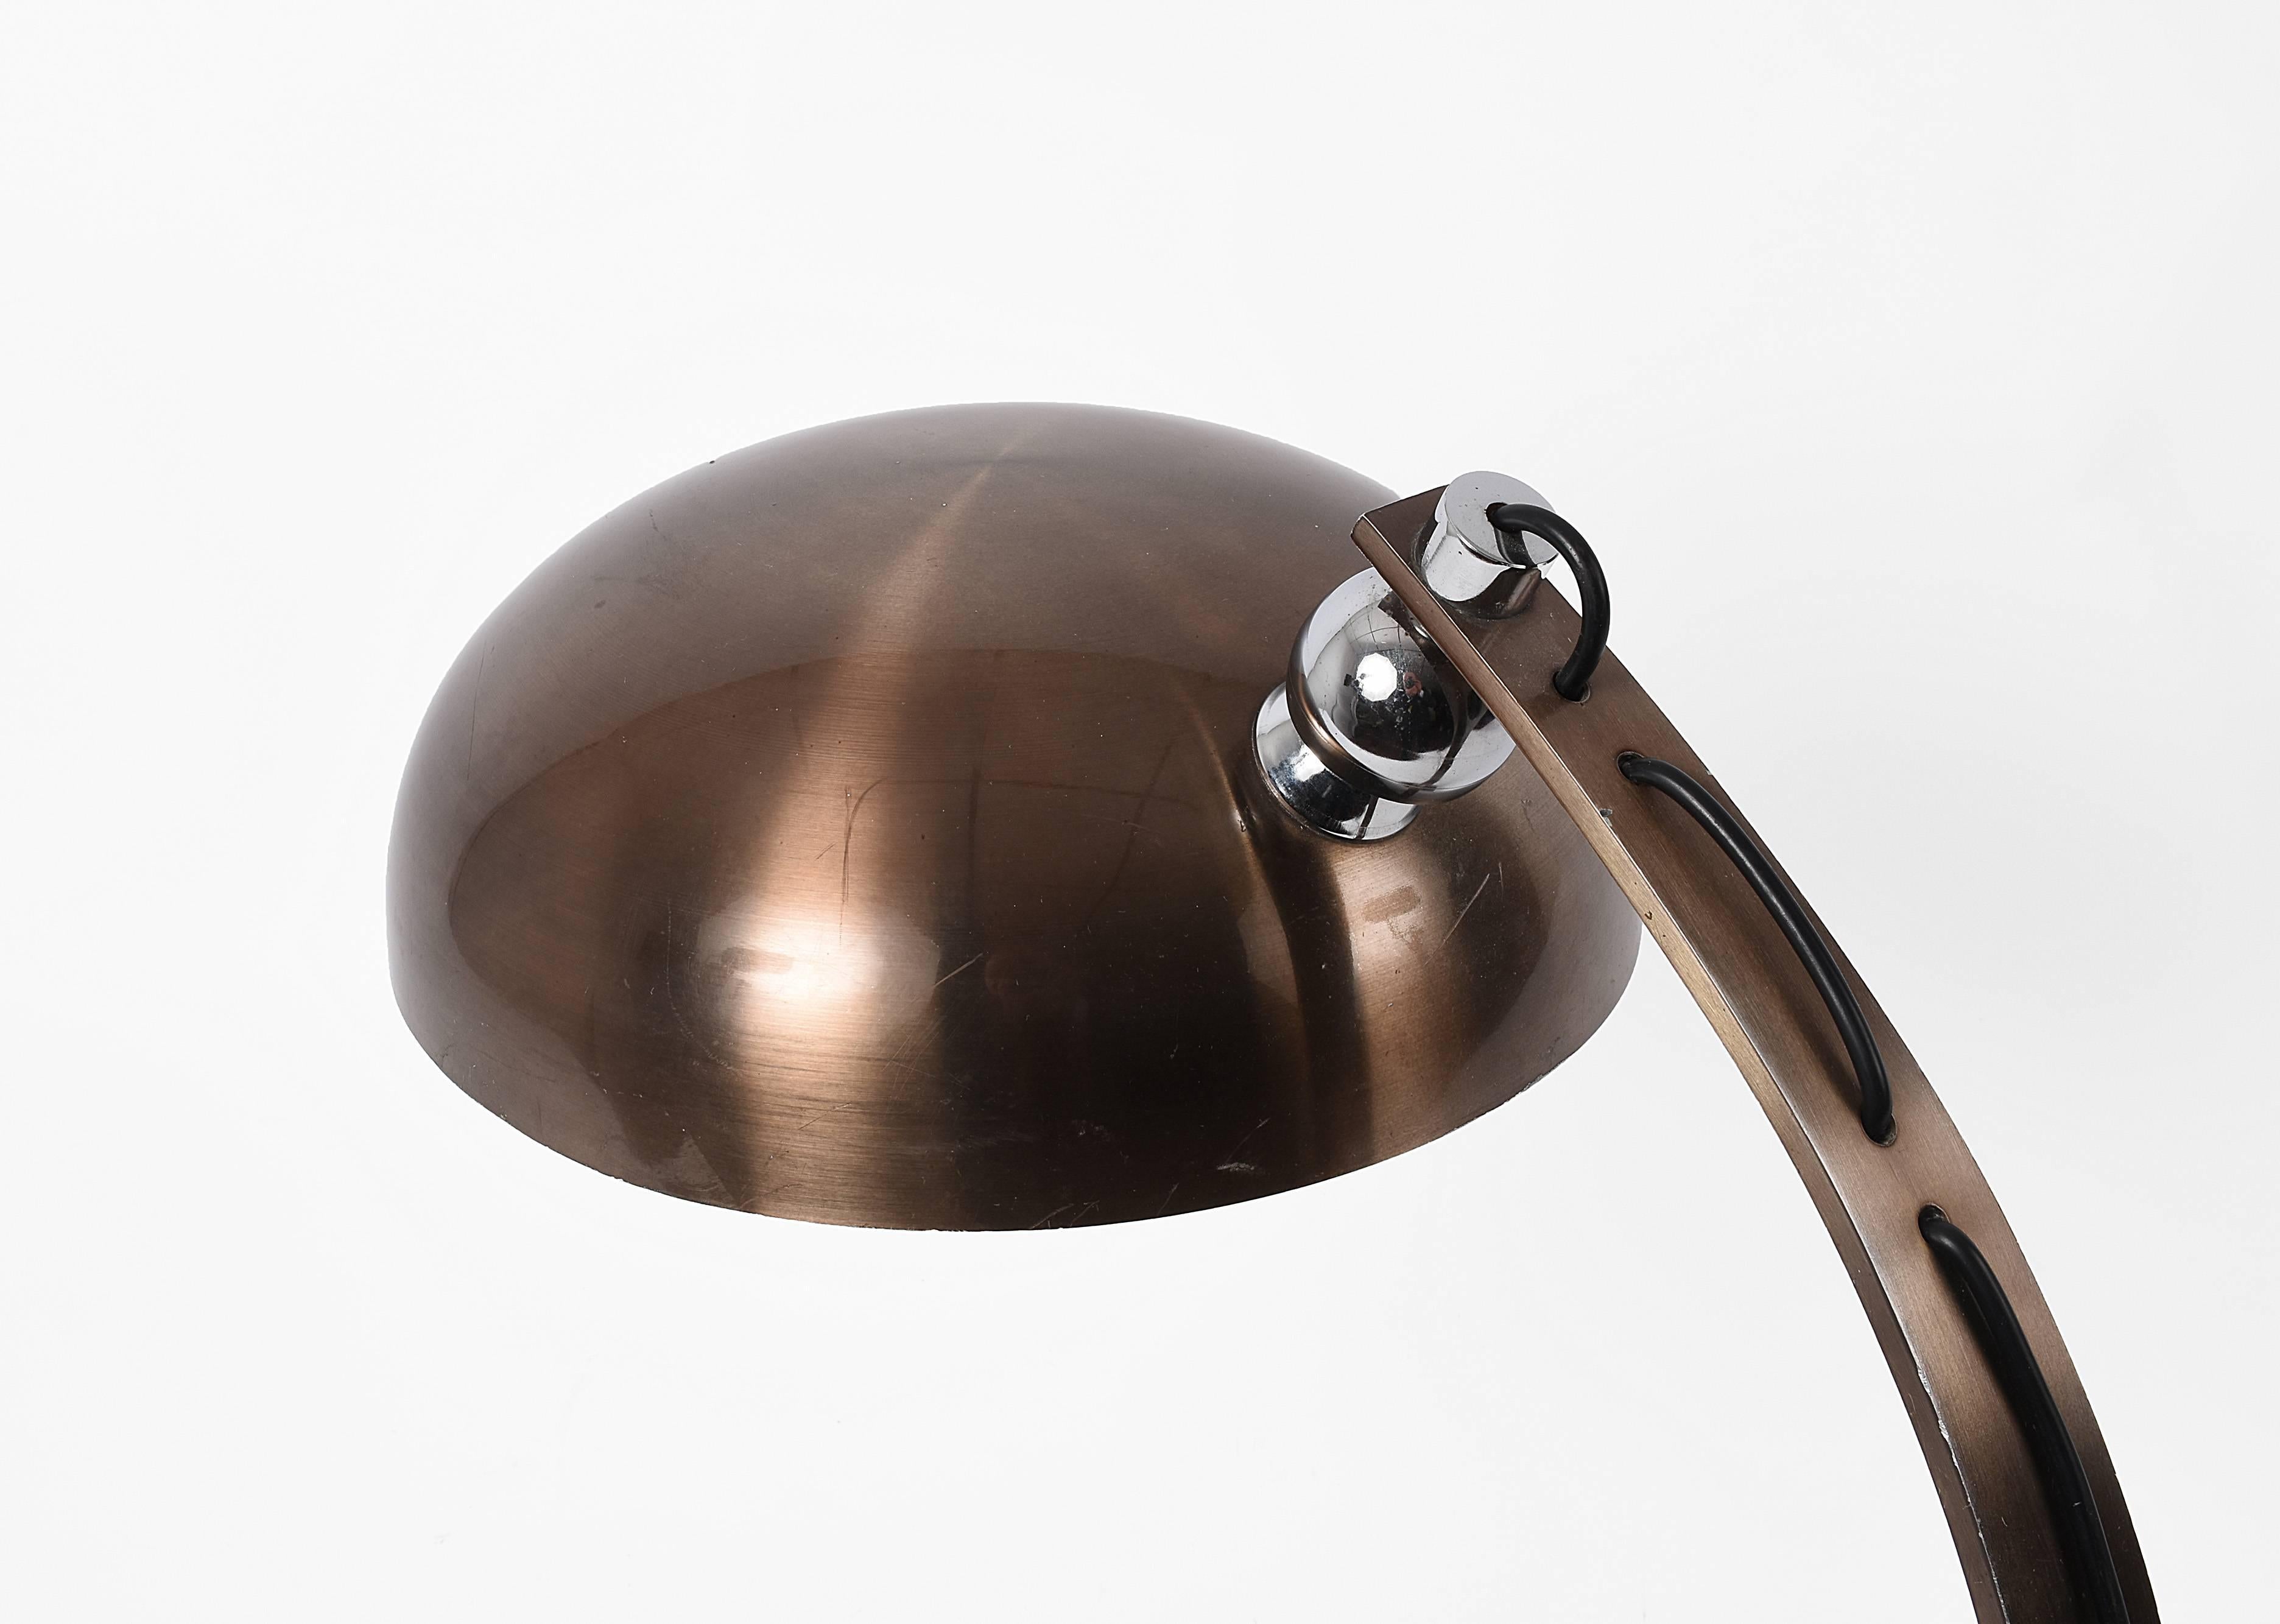 Schöne und große Tischlampe, die Arredoluce zugeschrieben wird. Sie wurde in den 1970er Jahren in Italien hergestellt und wird Arredoluce zugeschrieben.

Das Licht ist verstellbar und das bronzierte Aluminium harmoniert perfekt mit dem